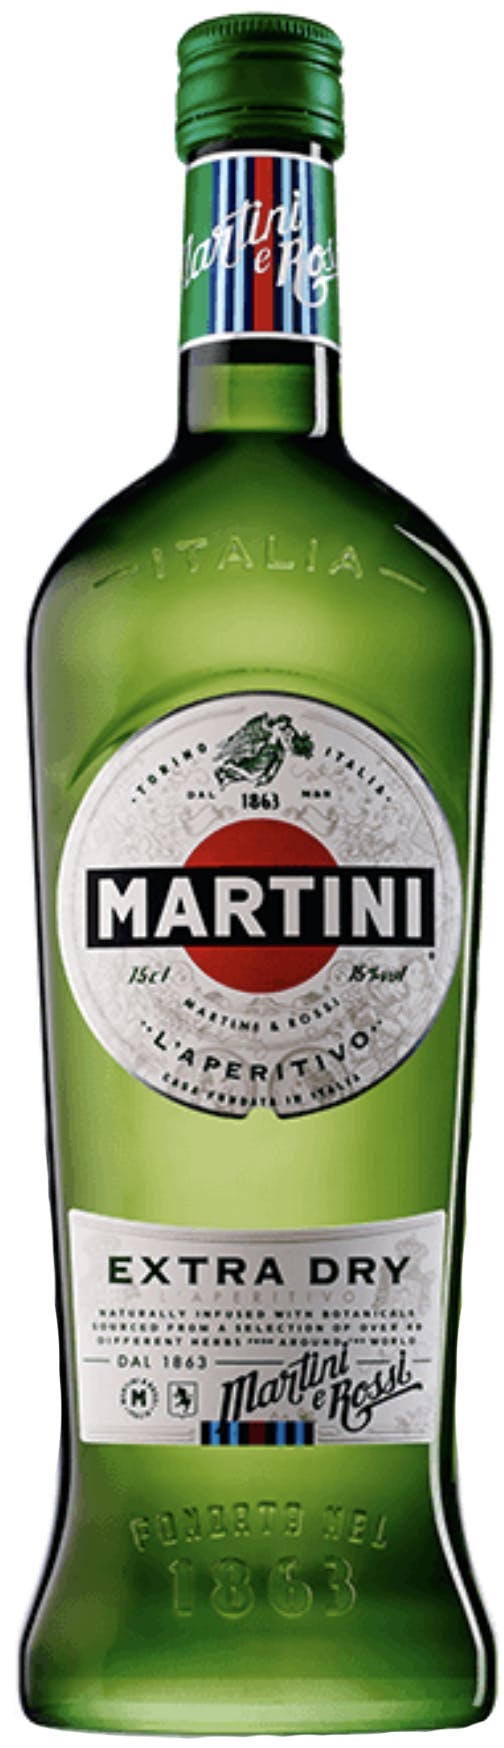 MARTINI PROSECCO BOX OF 6 BOTTLES